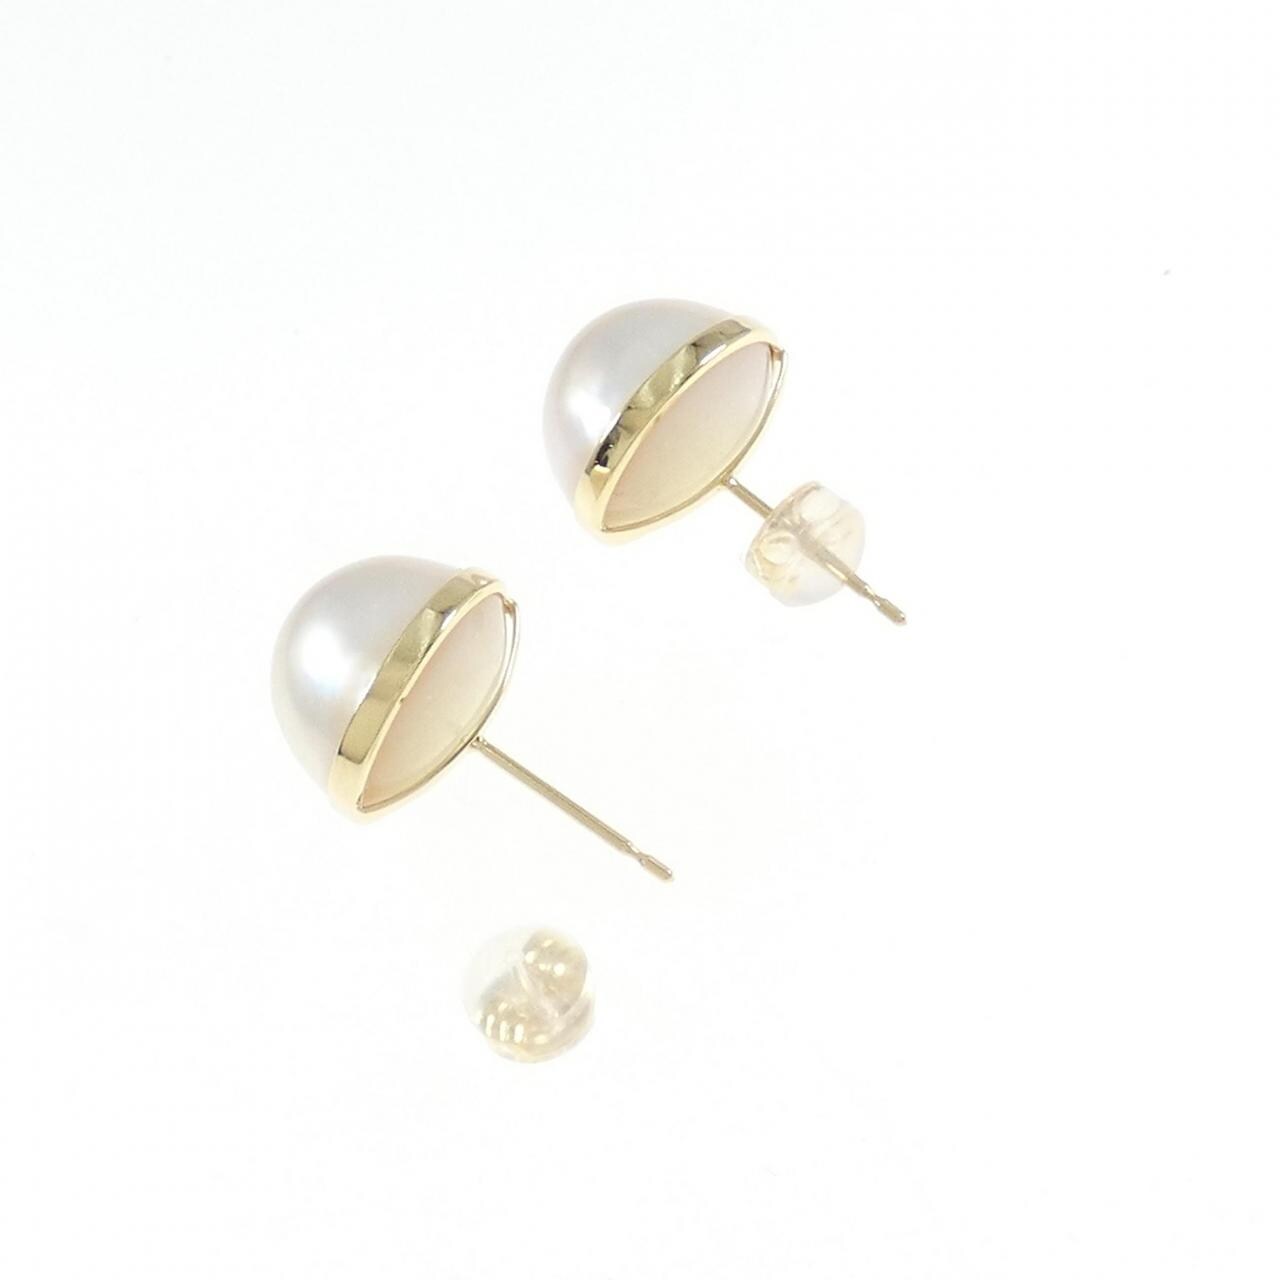 K18YG Mabe pearl earrings